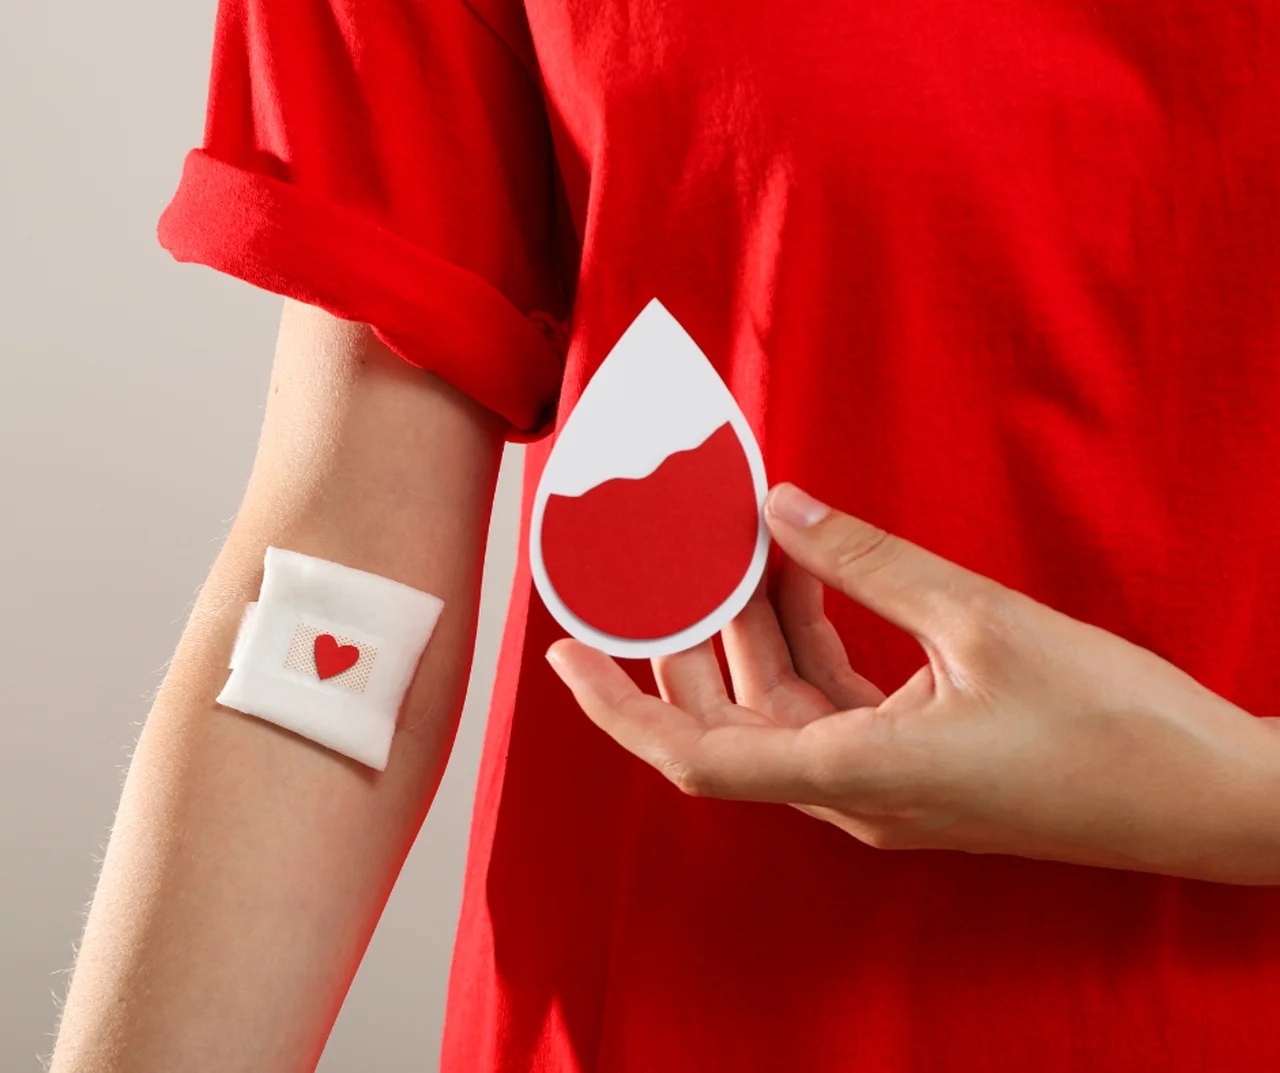 Nowe przywileje dla honorowych dawców krwi. Pomóż innym i ciesz się nowymi korzyściami, które oferuje rząd!